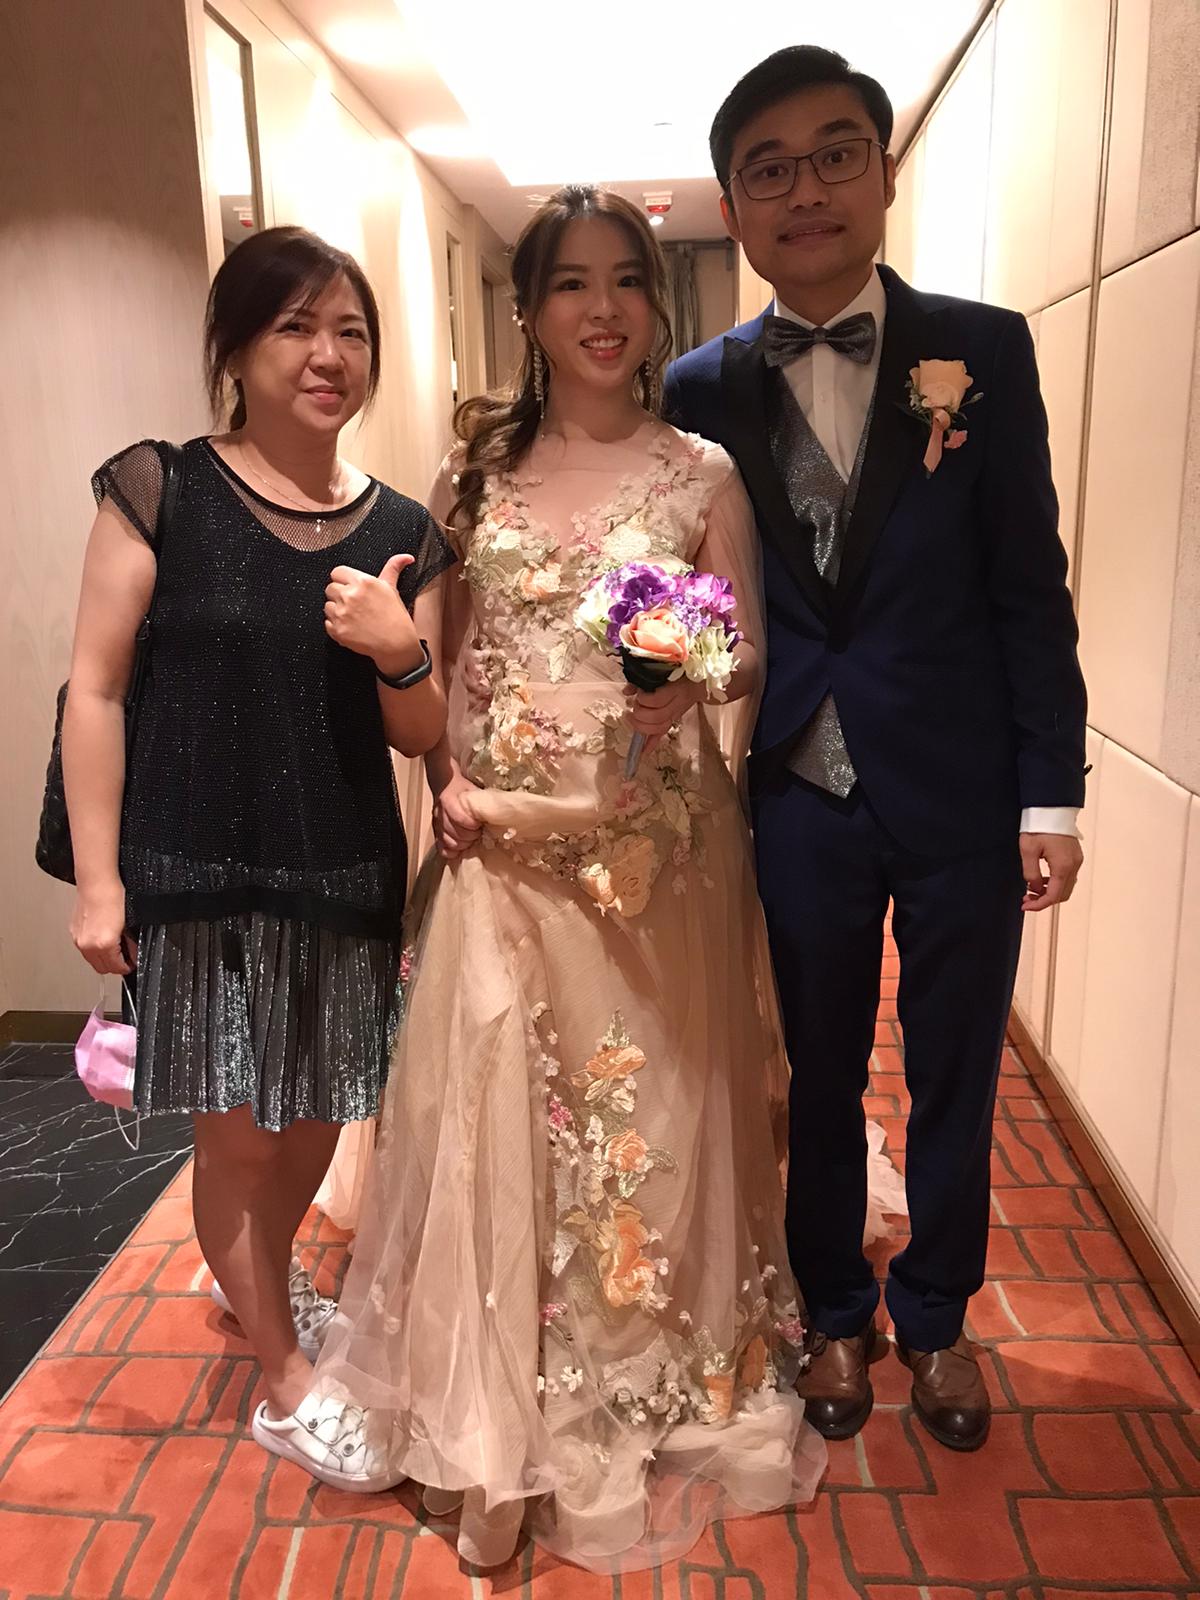 Queeny Ng之婚禮統籌師紀錄: 我都送上千萬個祝福給他們